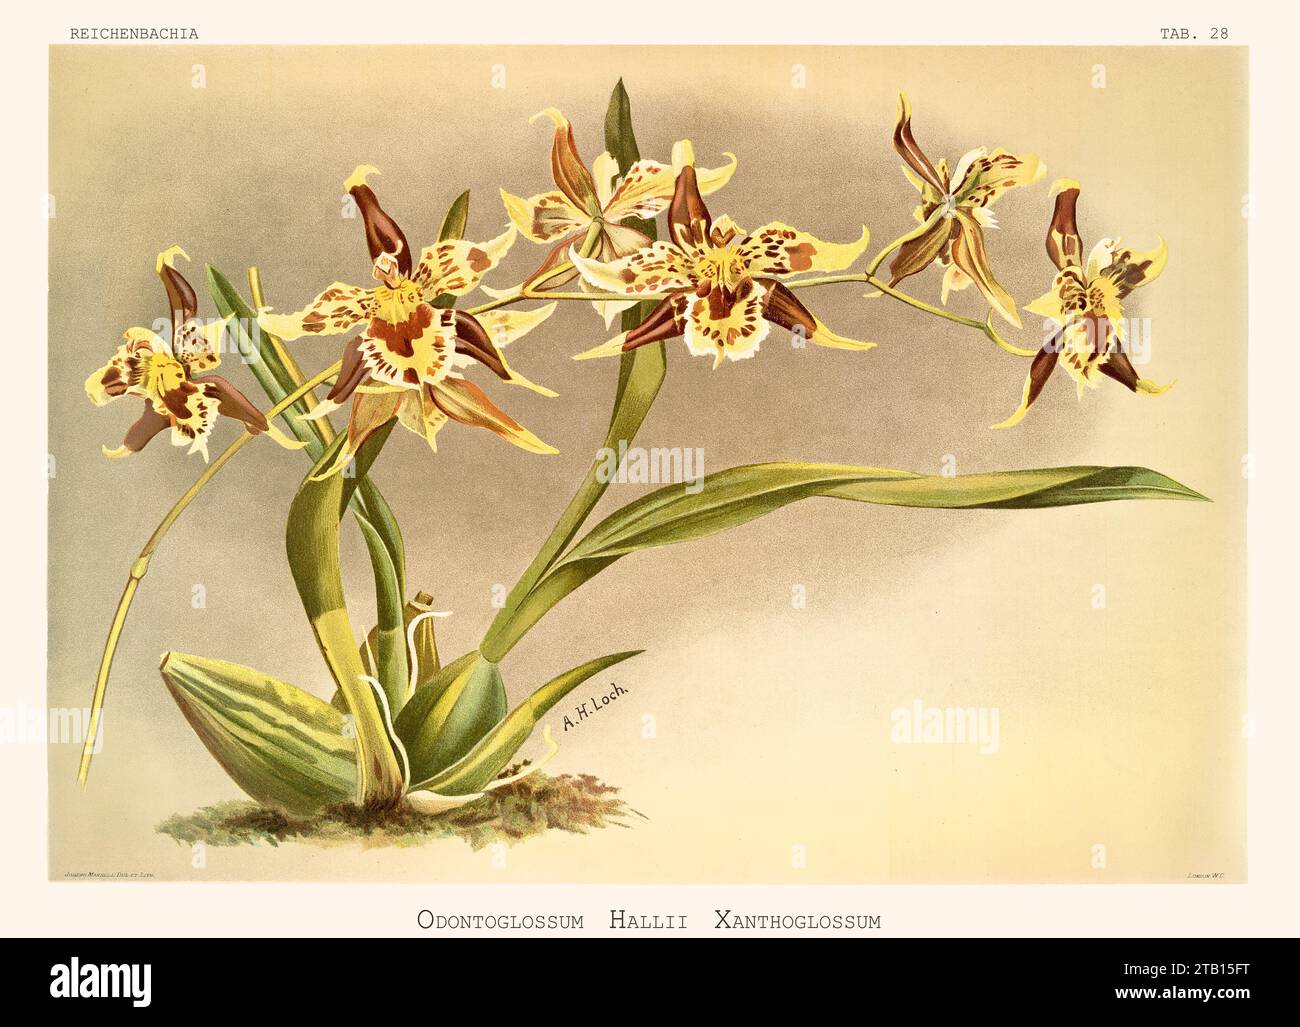 Illustration ancienne de l'Odontoglossum de Hall (Odontoglossum hallii). Reichenbachia, de F. Sander. St. Albans, Royaume-Uni, 1888 - 1894 Banque D'Images